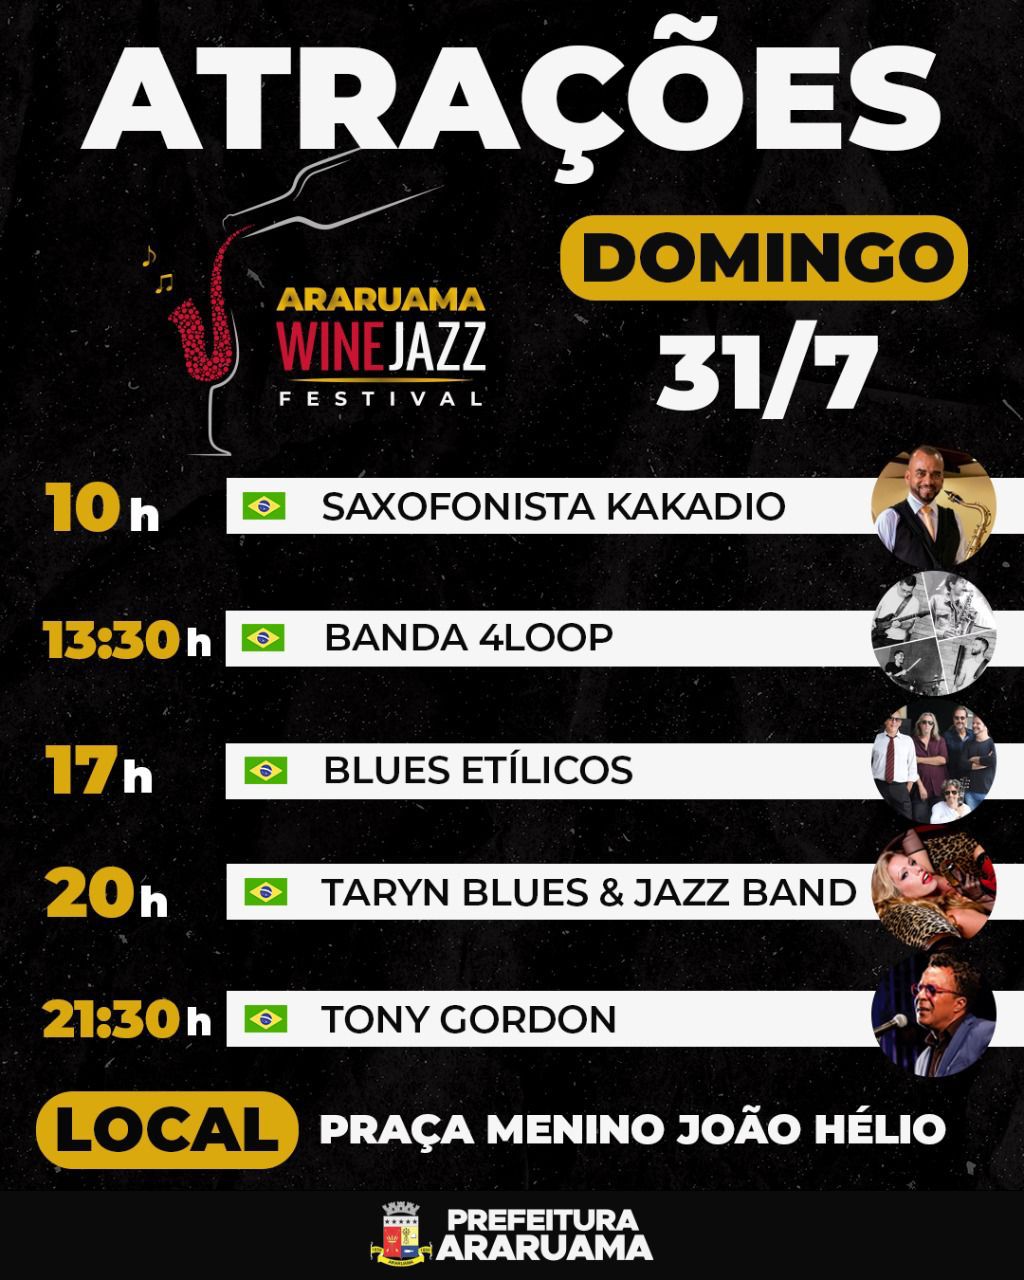 “Araruama Wine Jazz Festival” chega ao último dia com apresentações musicais nos três diferentes palcos